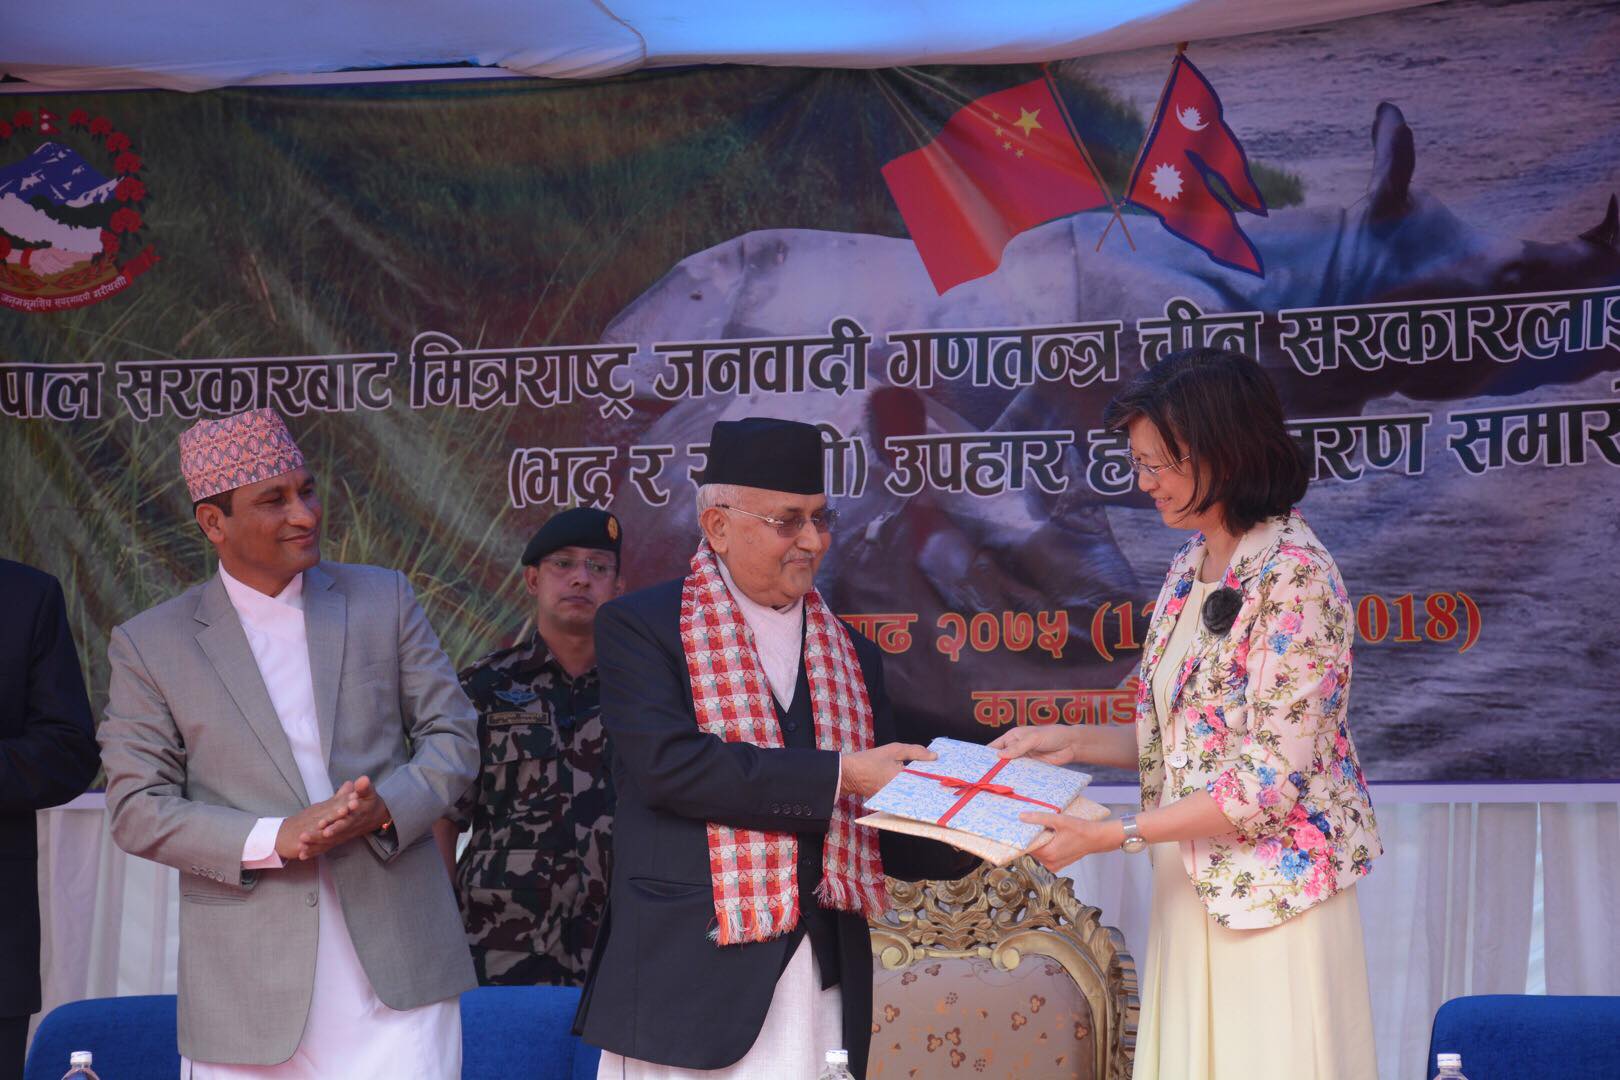 भृकुटी र अरनिकोबाट शुरु भएको नेपाल–चीनको सम्बन्धलाई भद्र र रुपसीले थप गाढा बनायो : प्रधानमन्त्री ओली